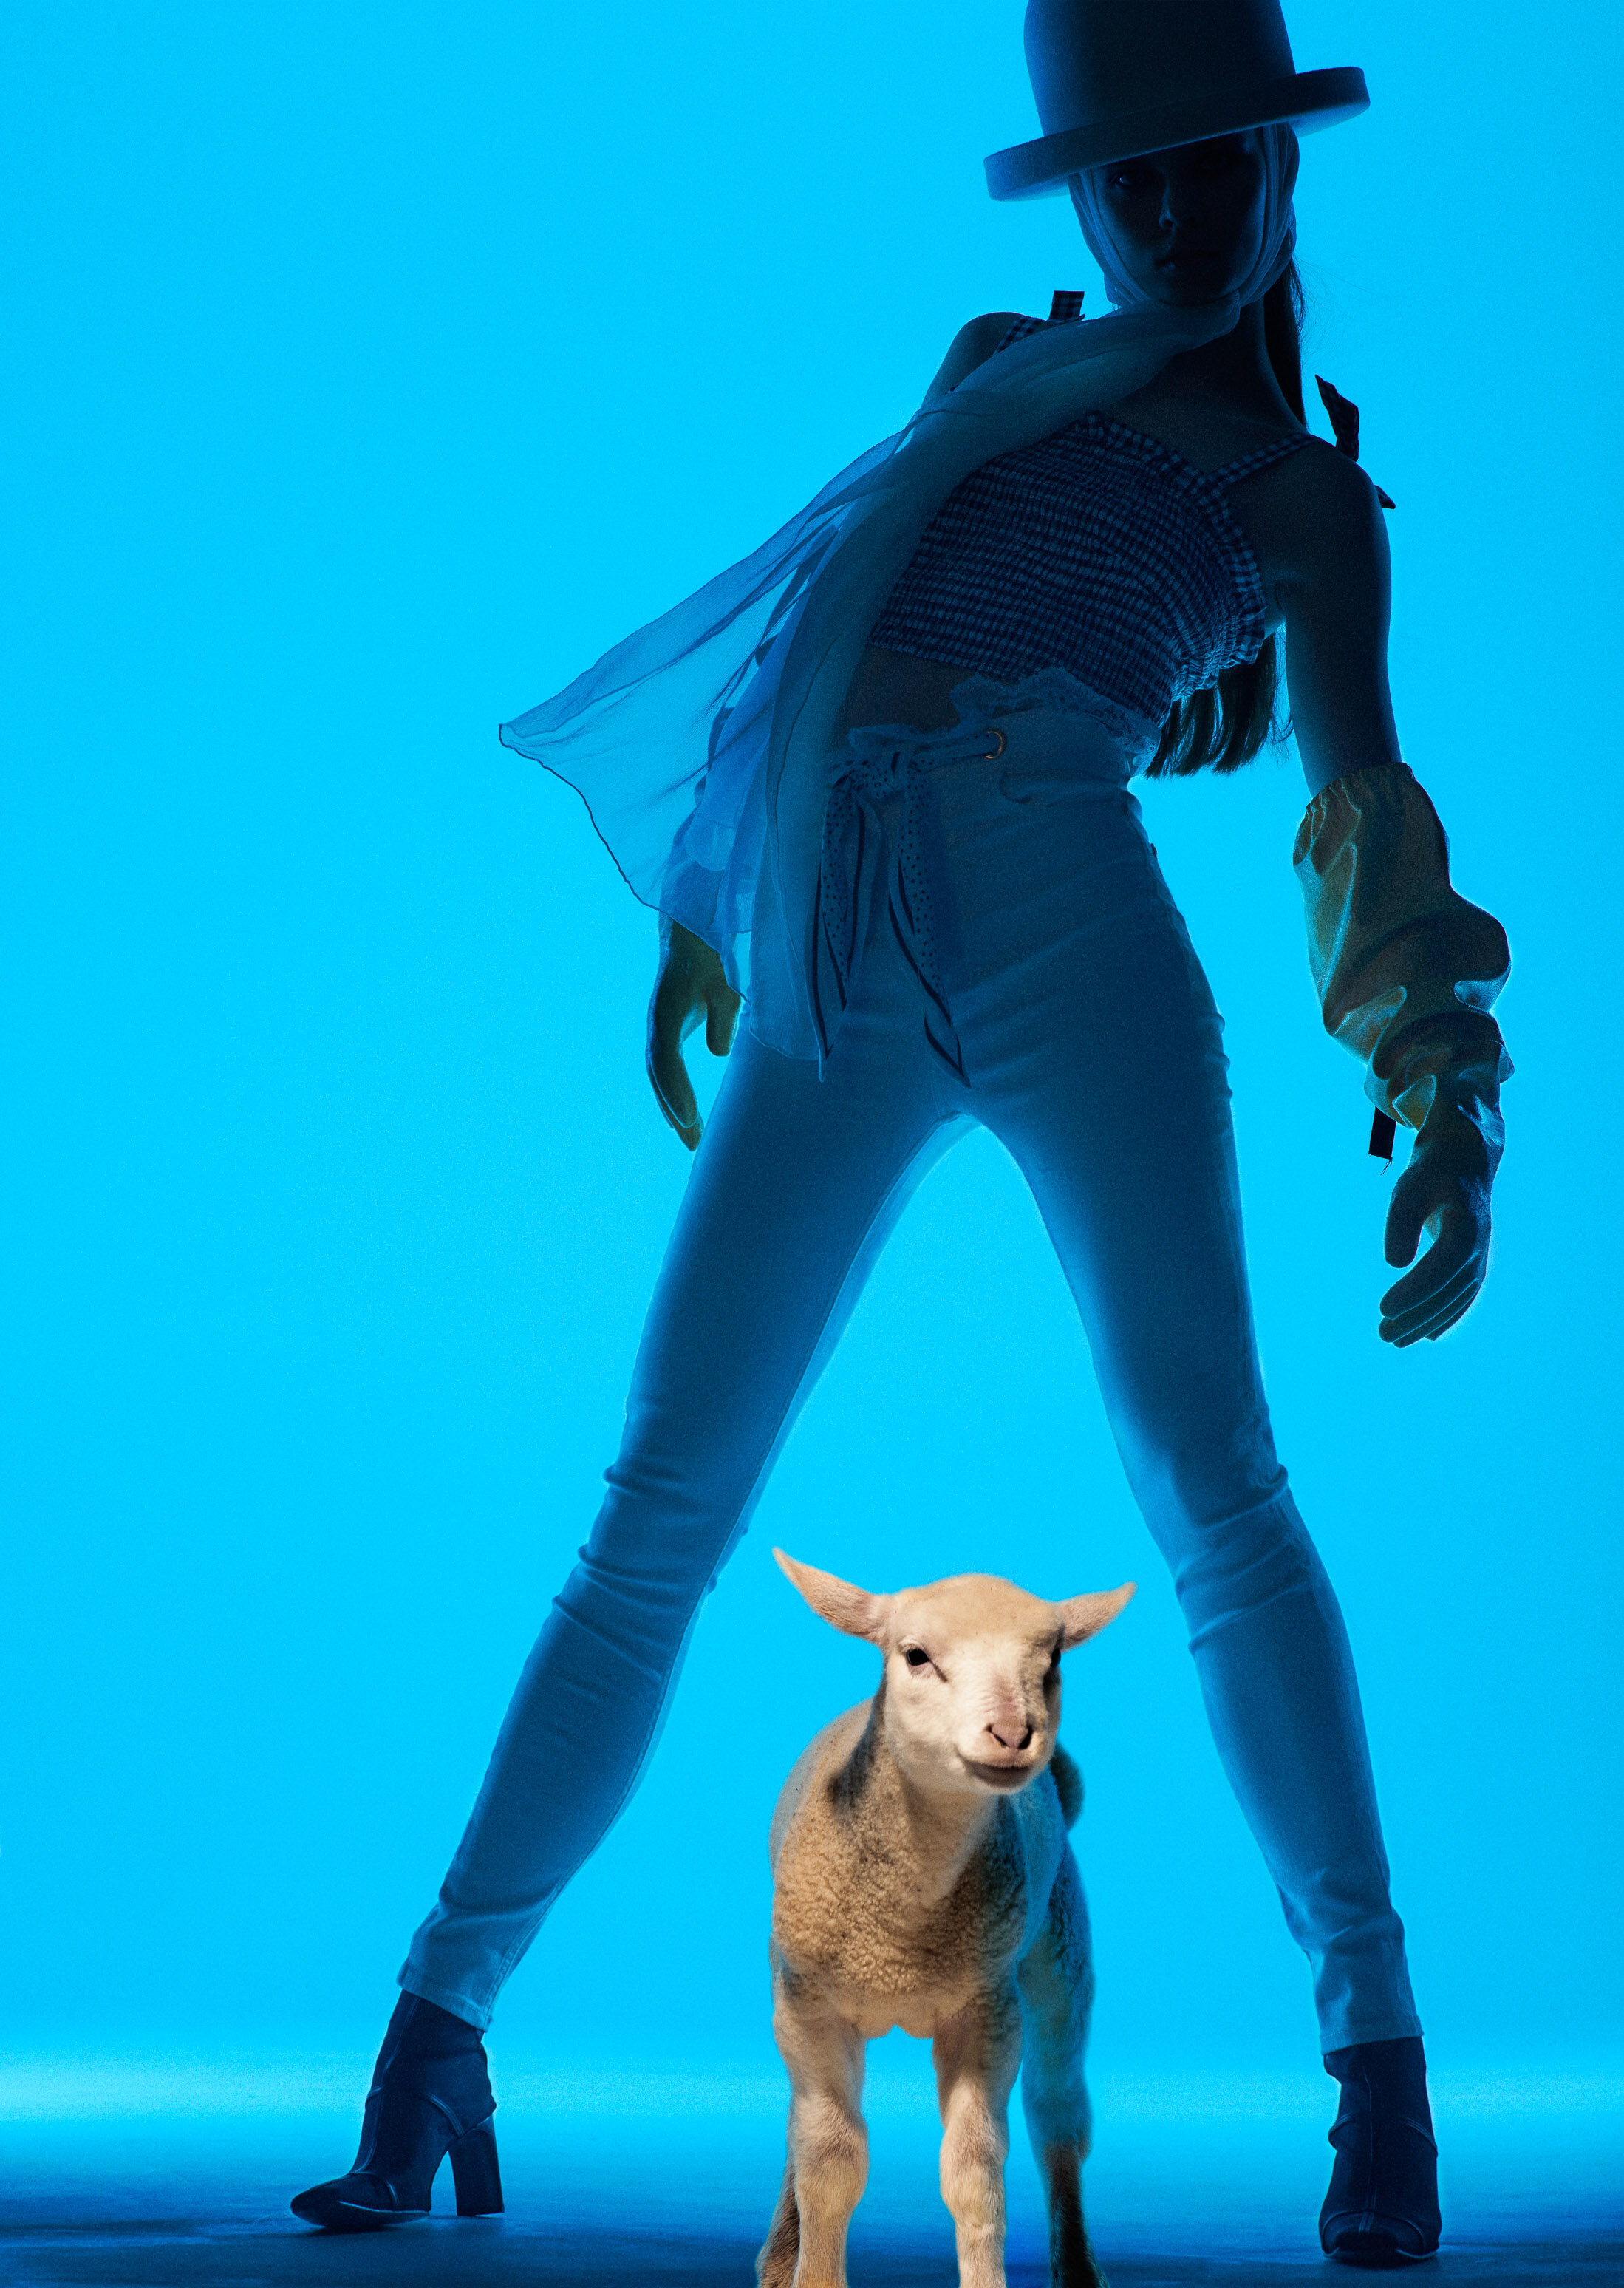 Heji Shin Ai Kamoshita Vogue Italia 2021 Animals Issue cover story CONCRETE-03.jpg